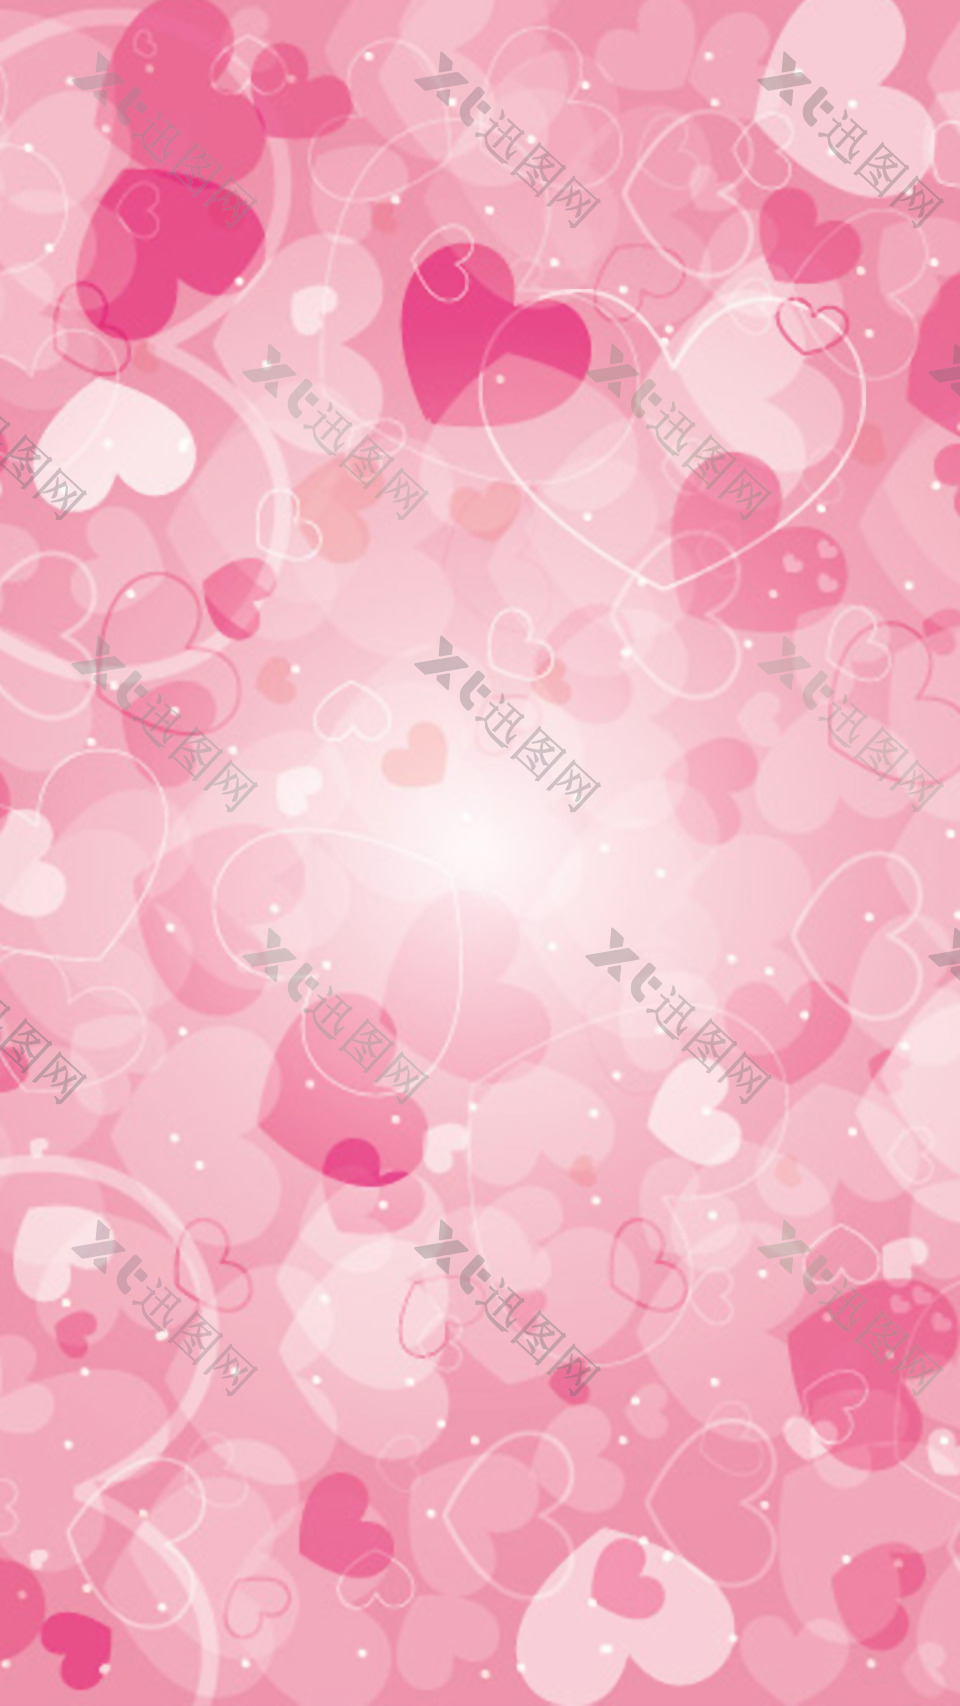 唯美粉色心形H5背景素材